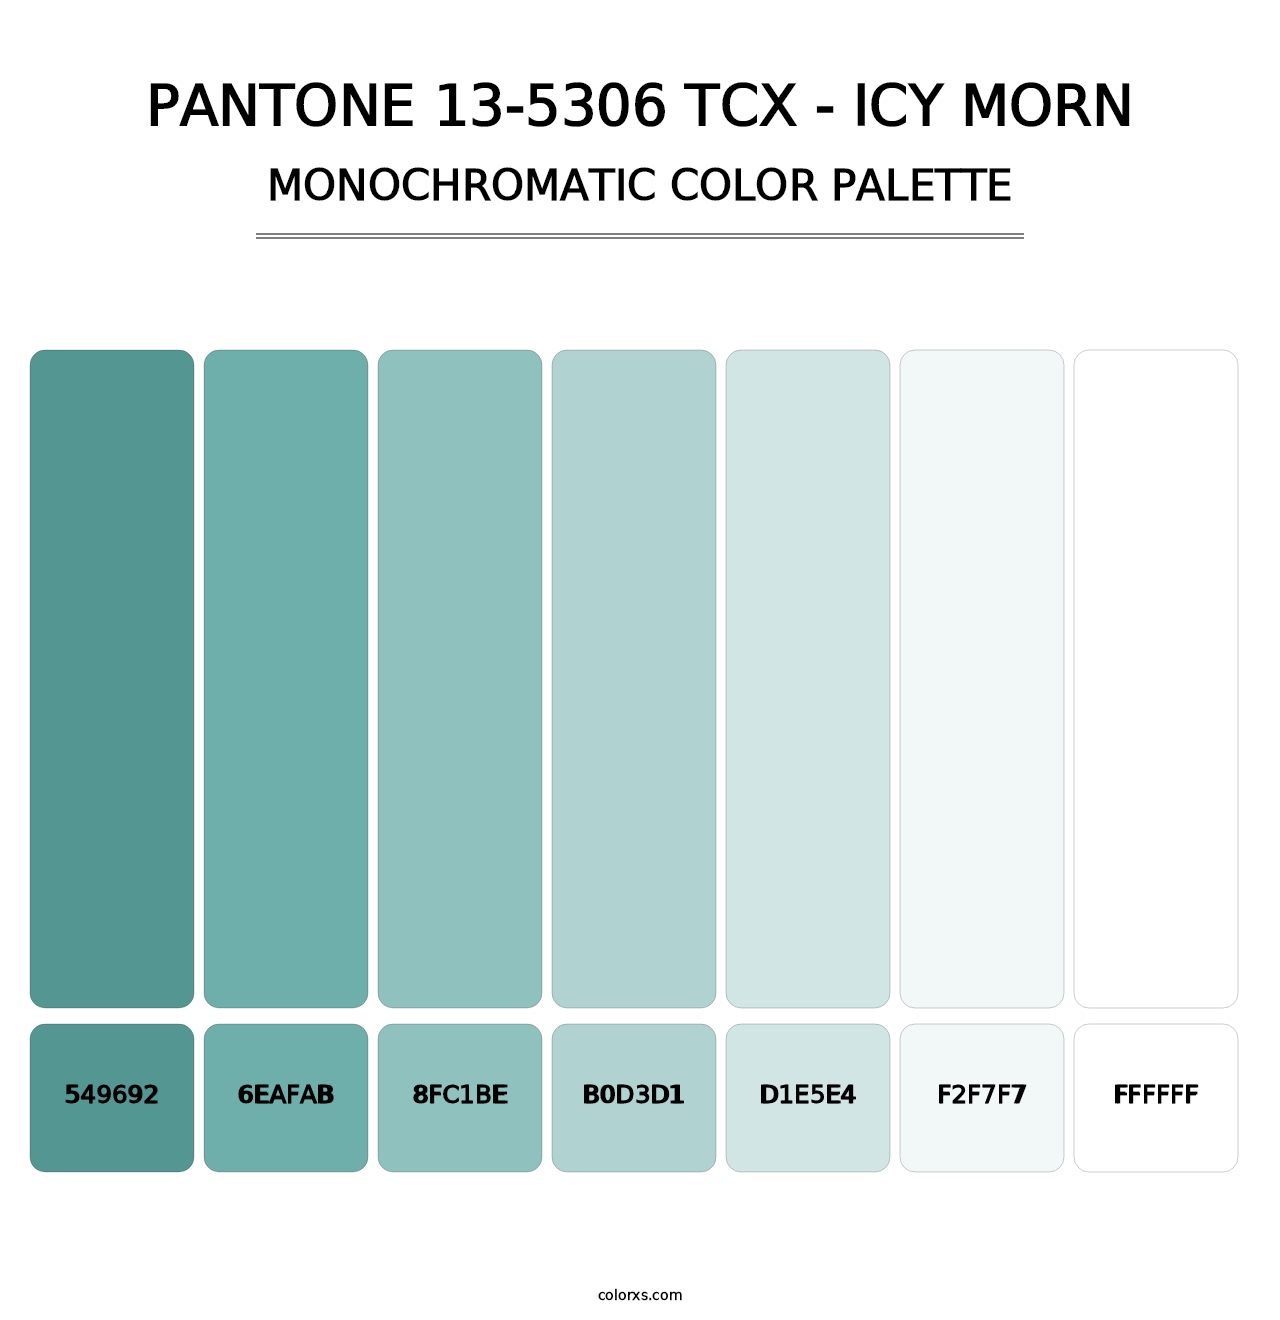 PANTONE 13-5306 TCX - Icy Morn - Monochromatic Color Palette